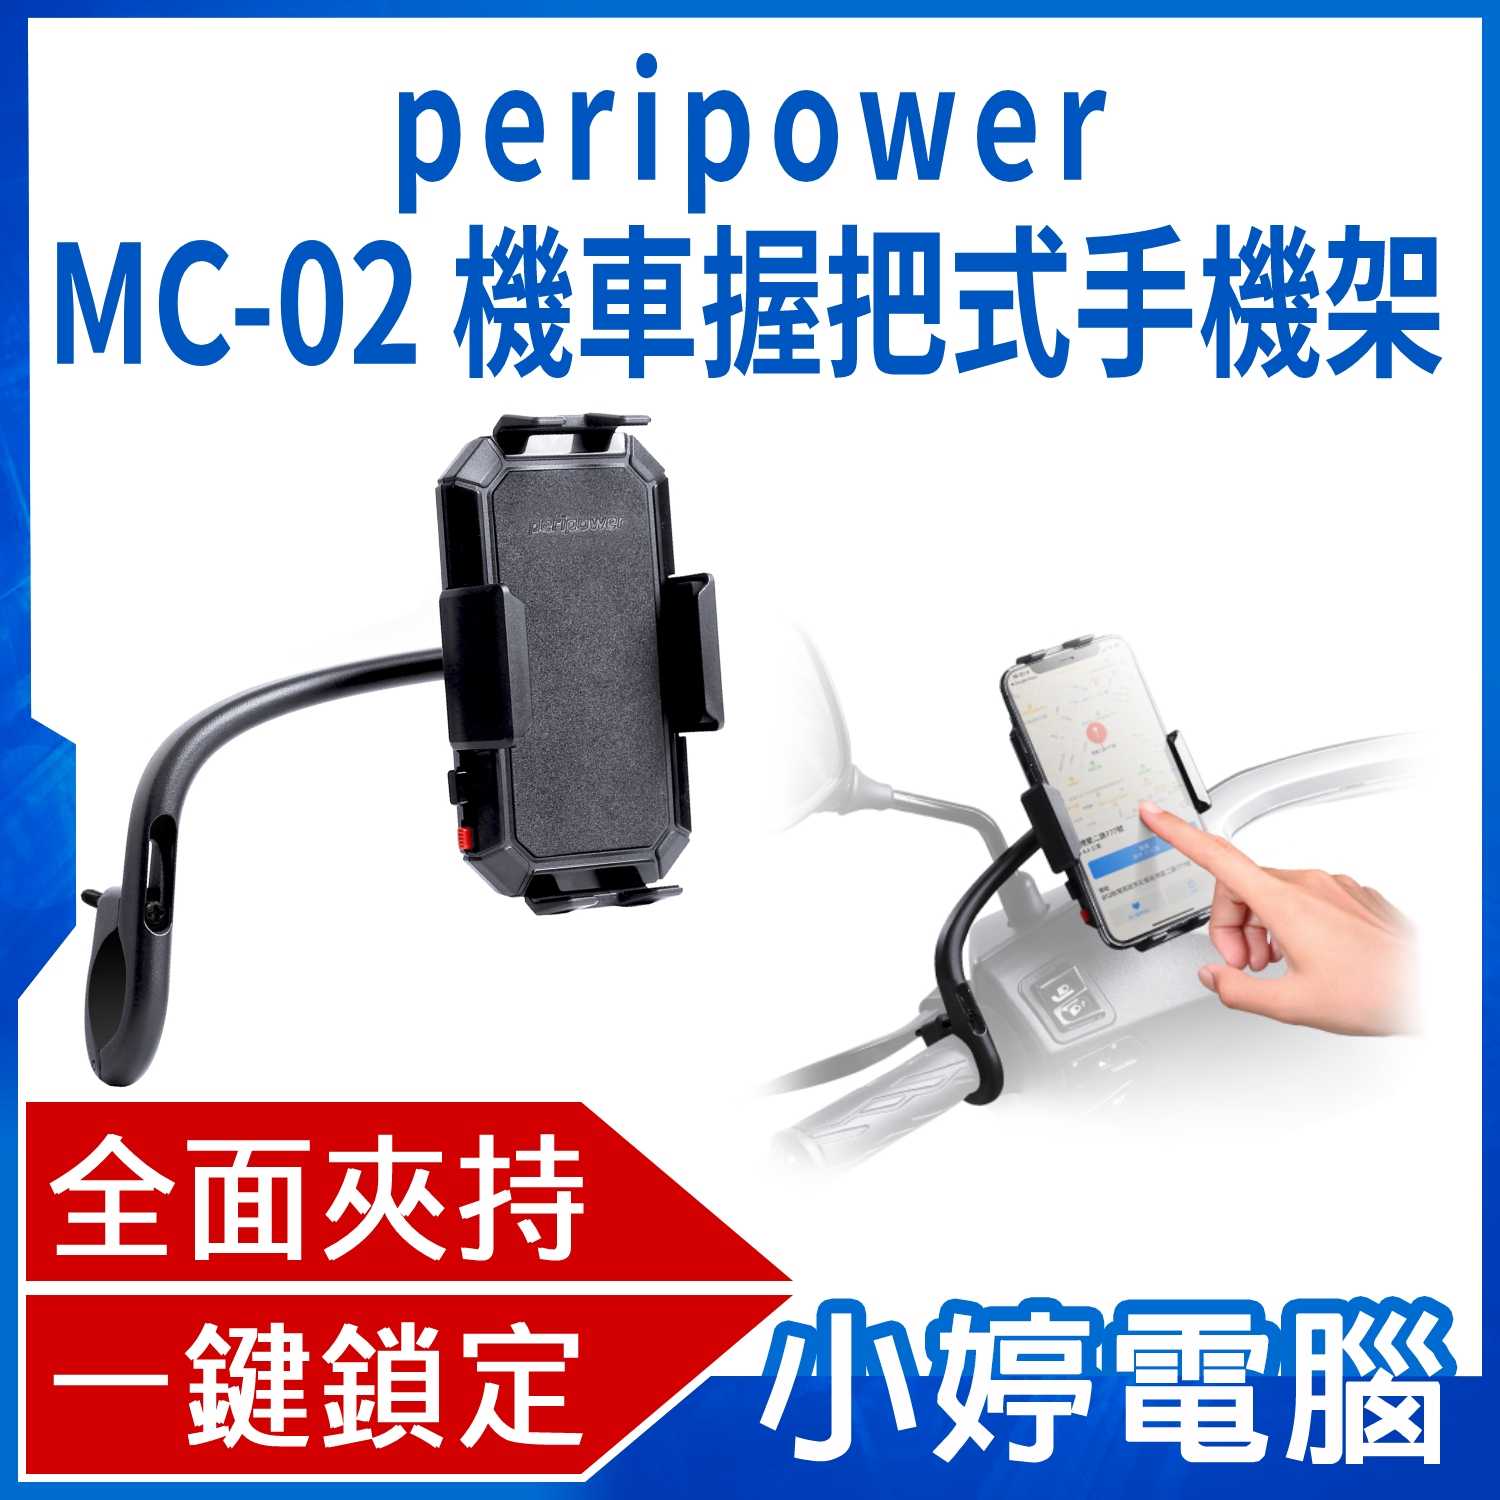 【小婷電腦】 peripower MC-02 機車握把式手機架 安裝簡易 鋁合金支架 安心鎖 全面夾持